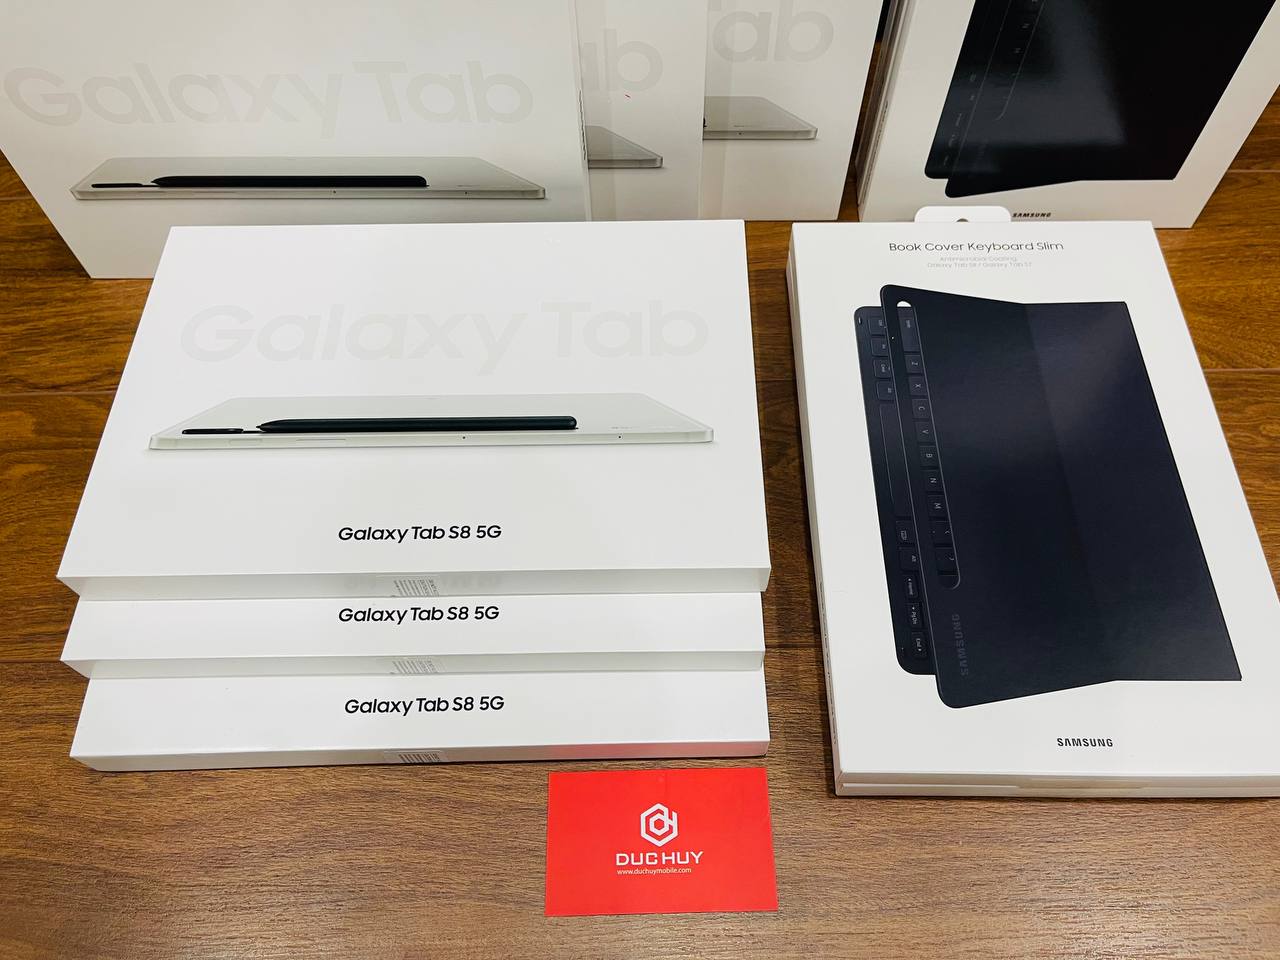 Galaxy Tab S8 5G